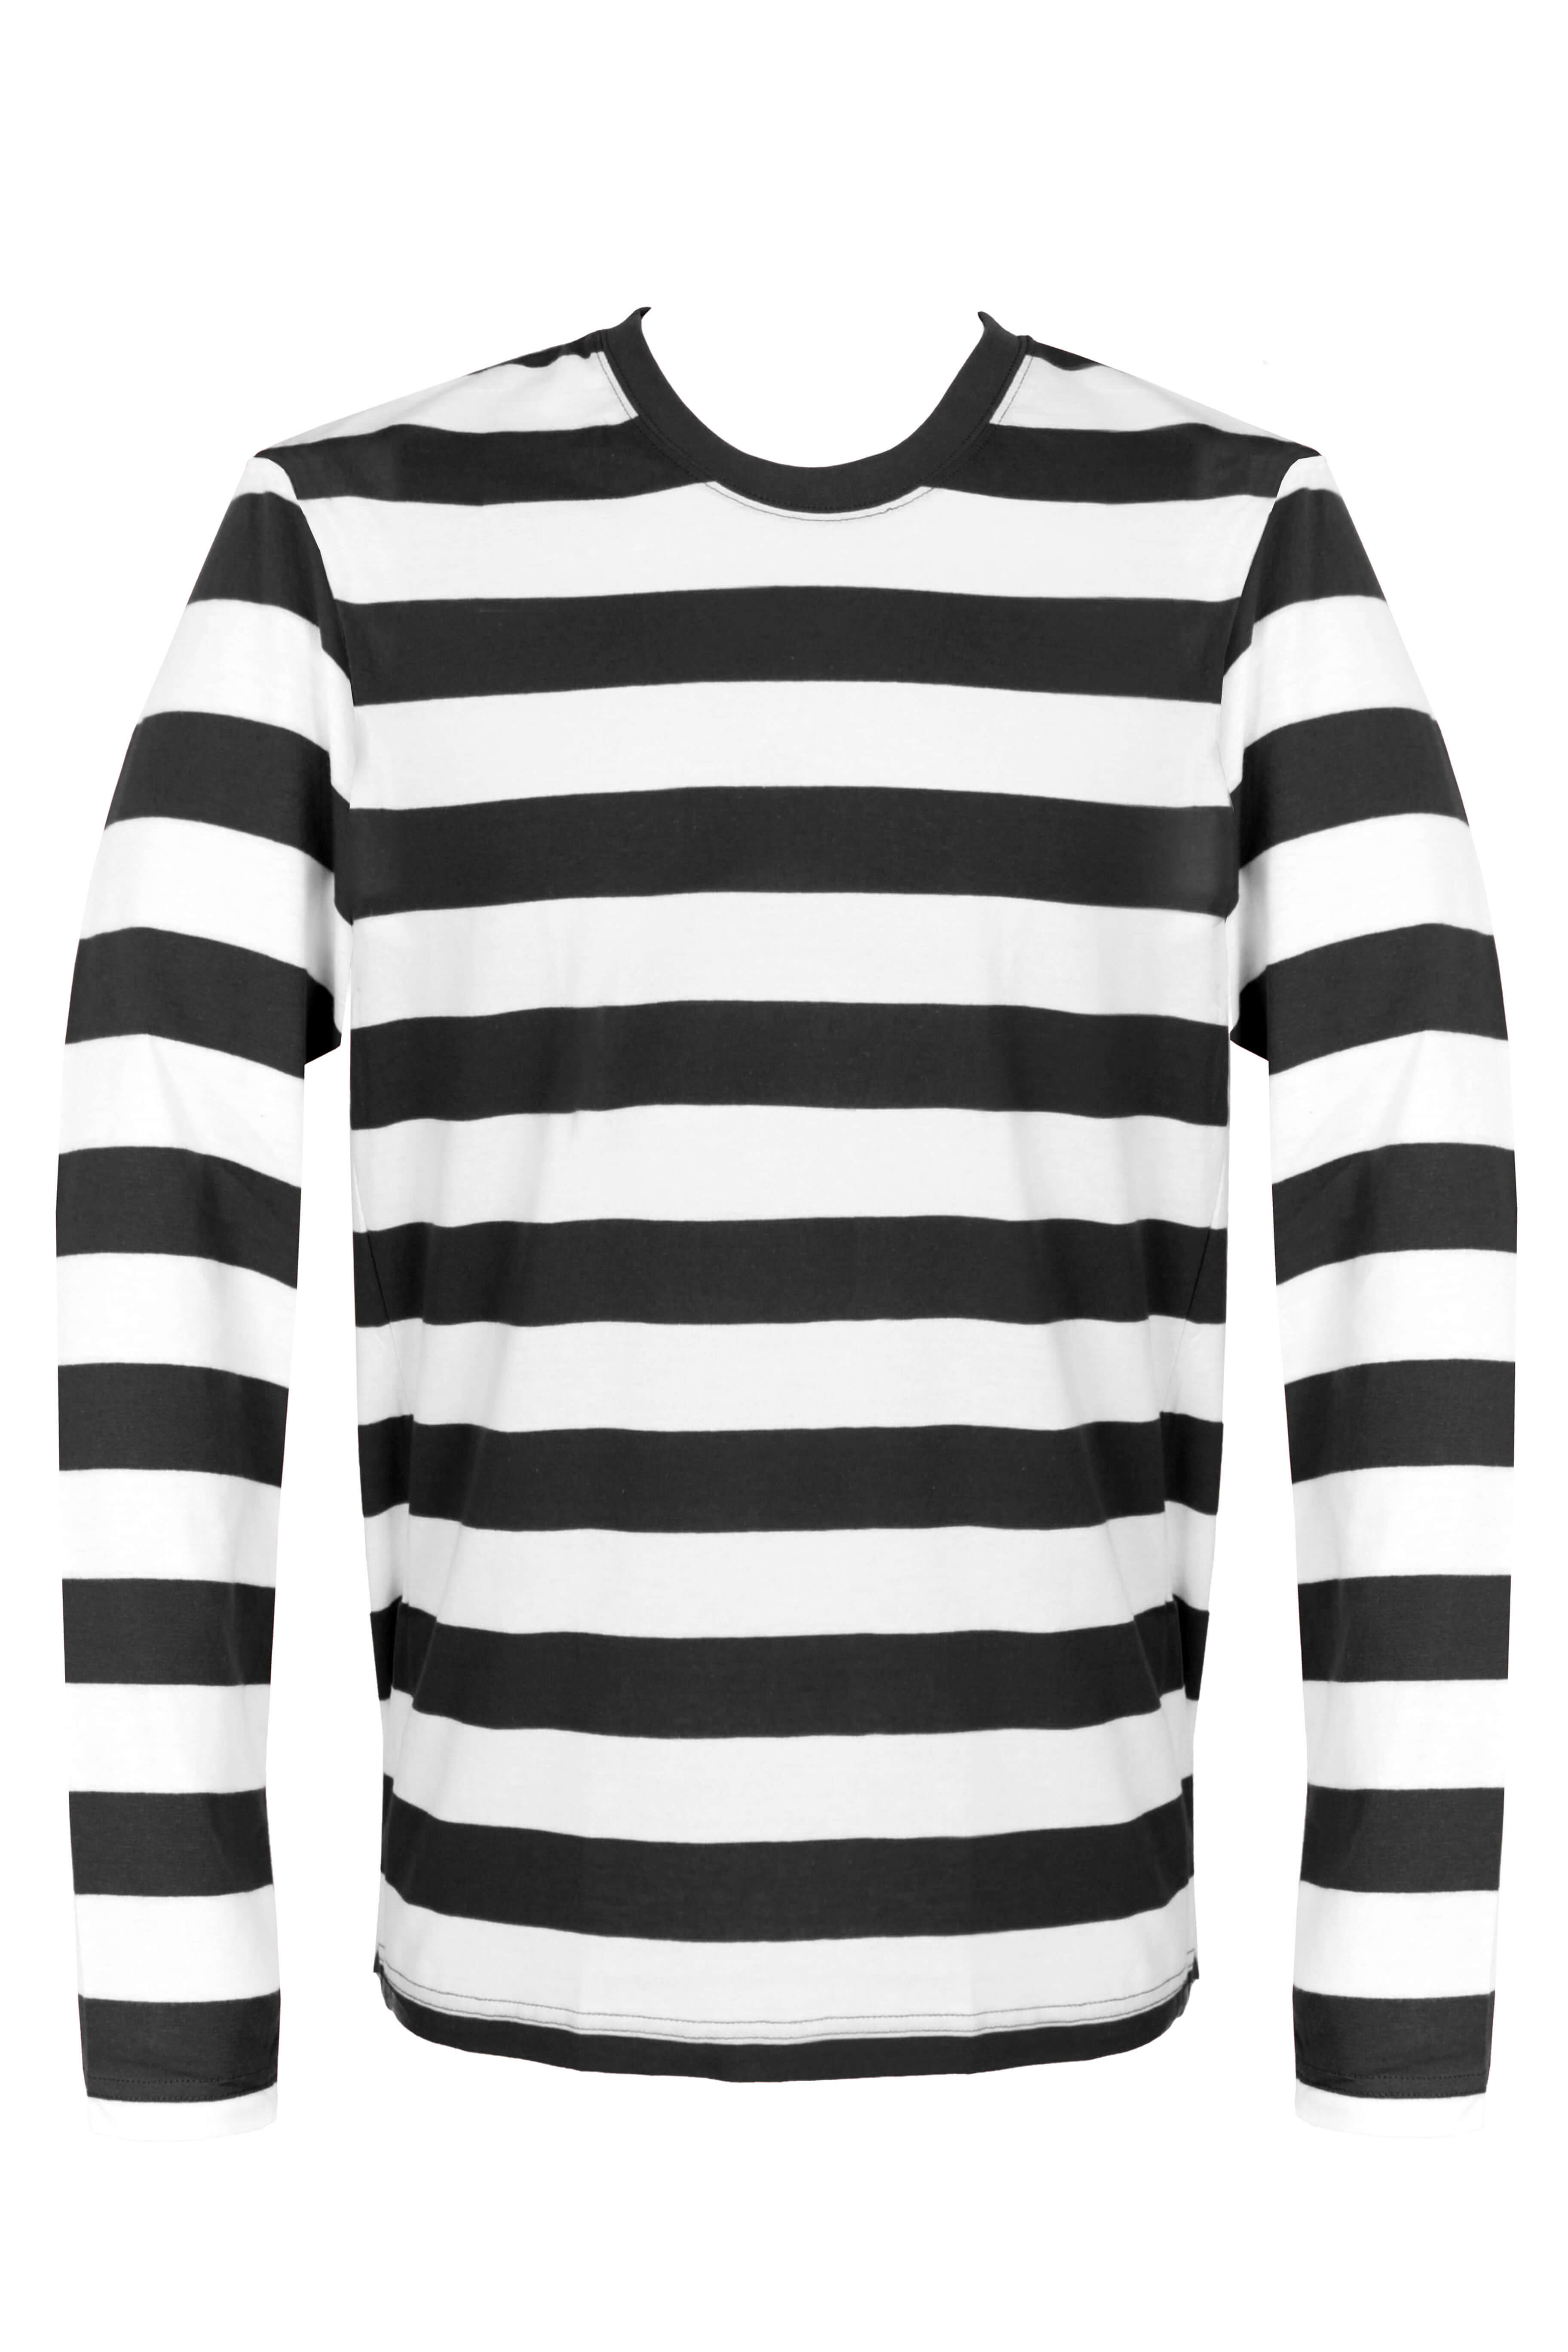 lancering favorit Godkendelse Adults Black and White Striped Long Sleeve Top - I Love Fancy Dress